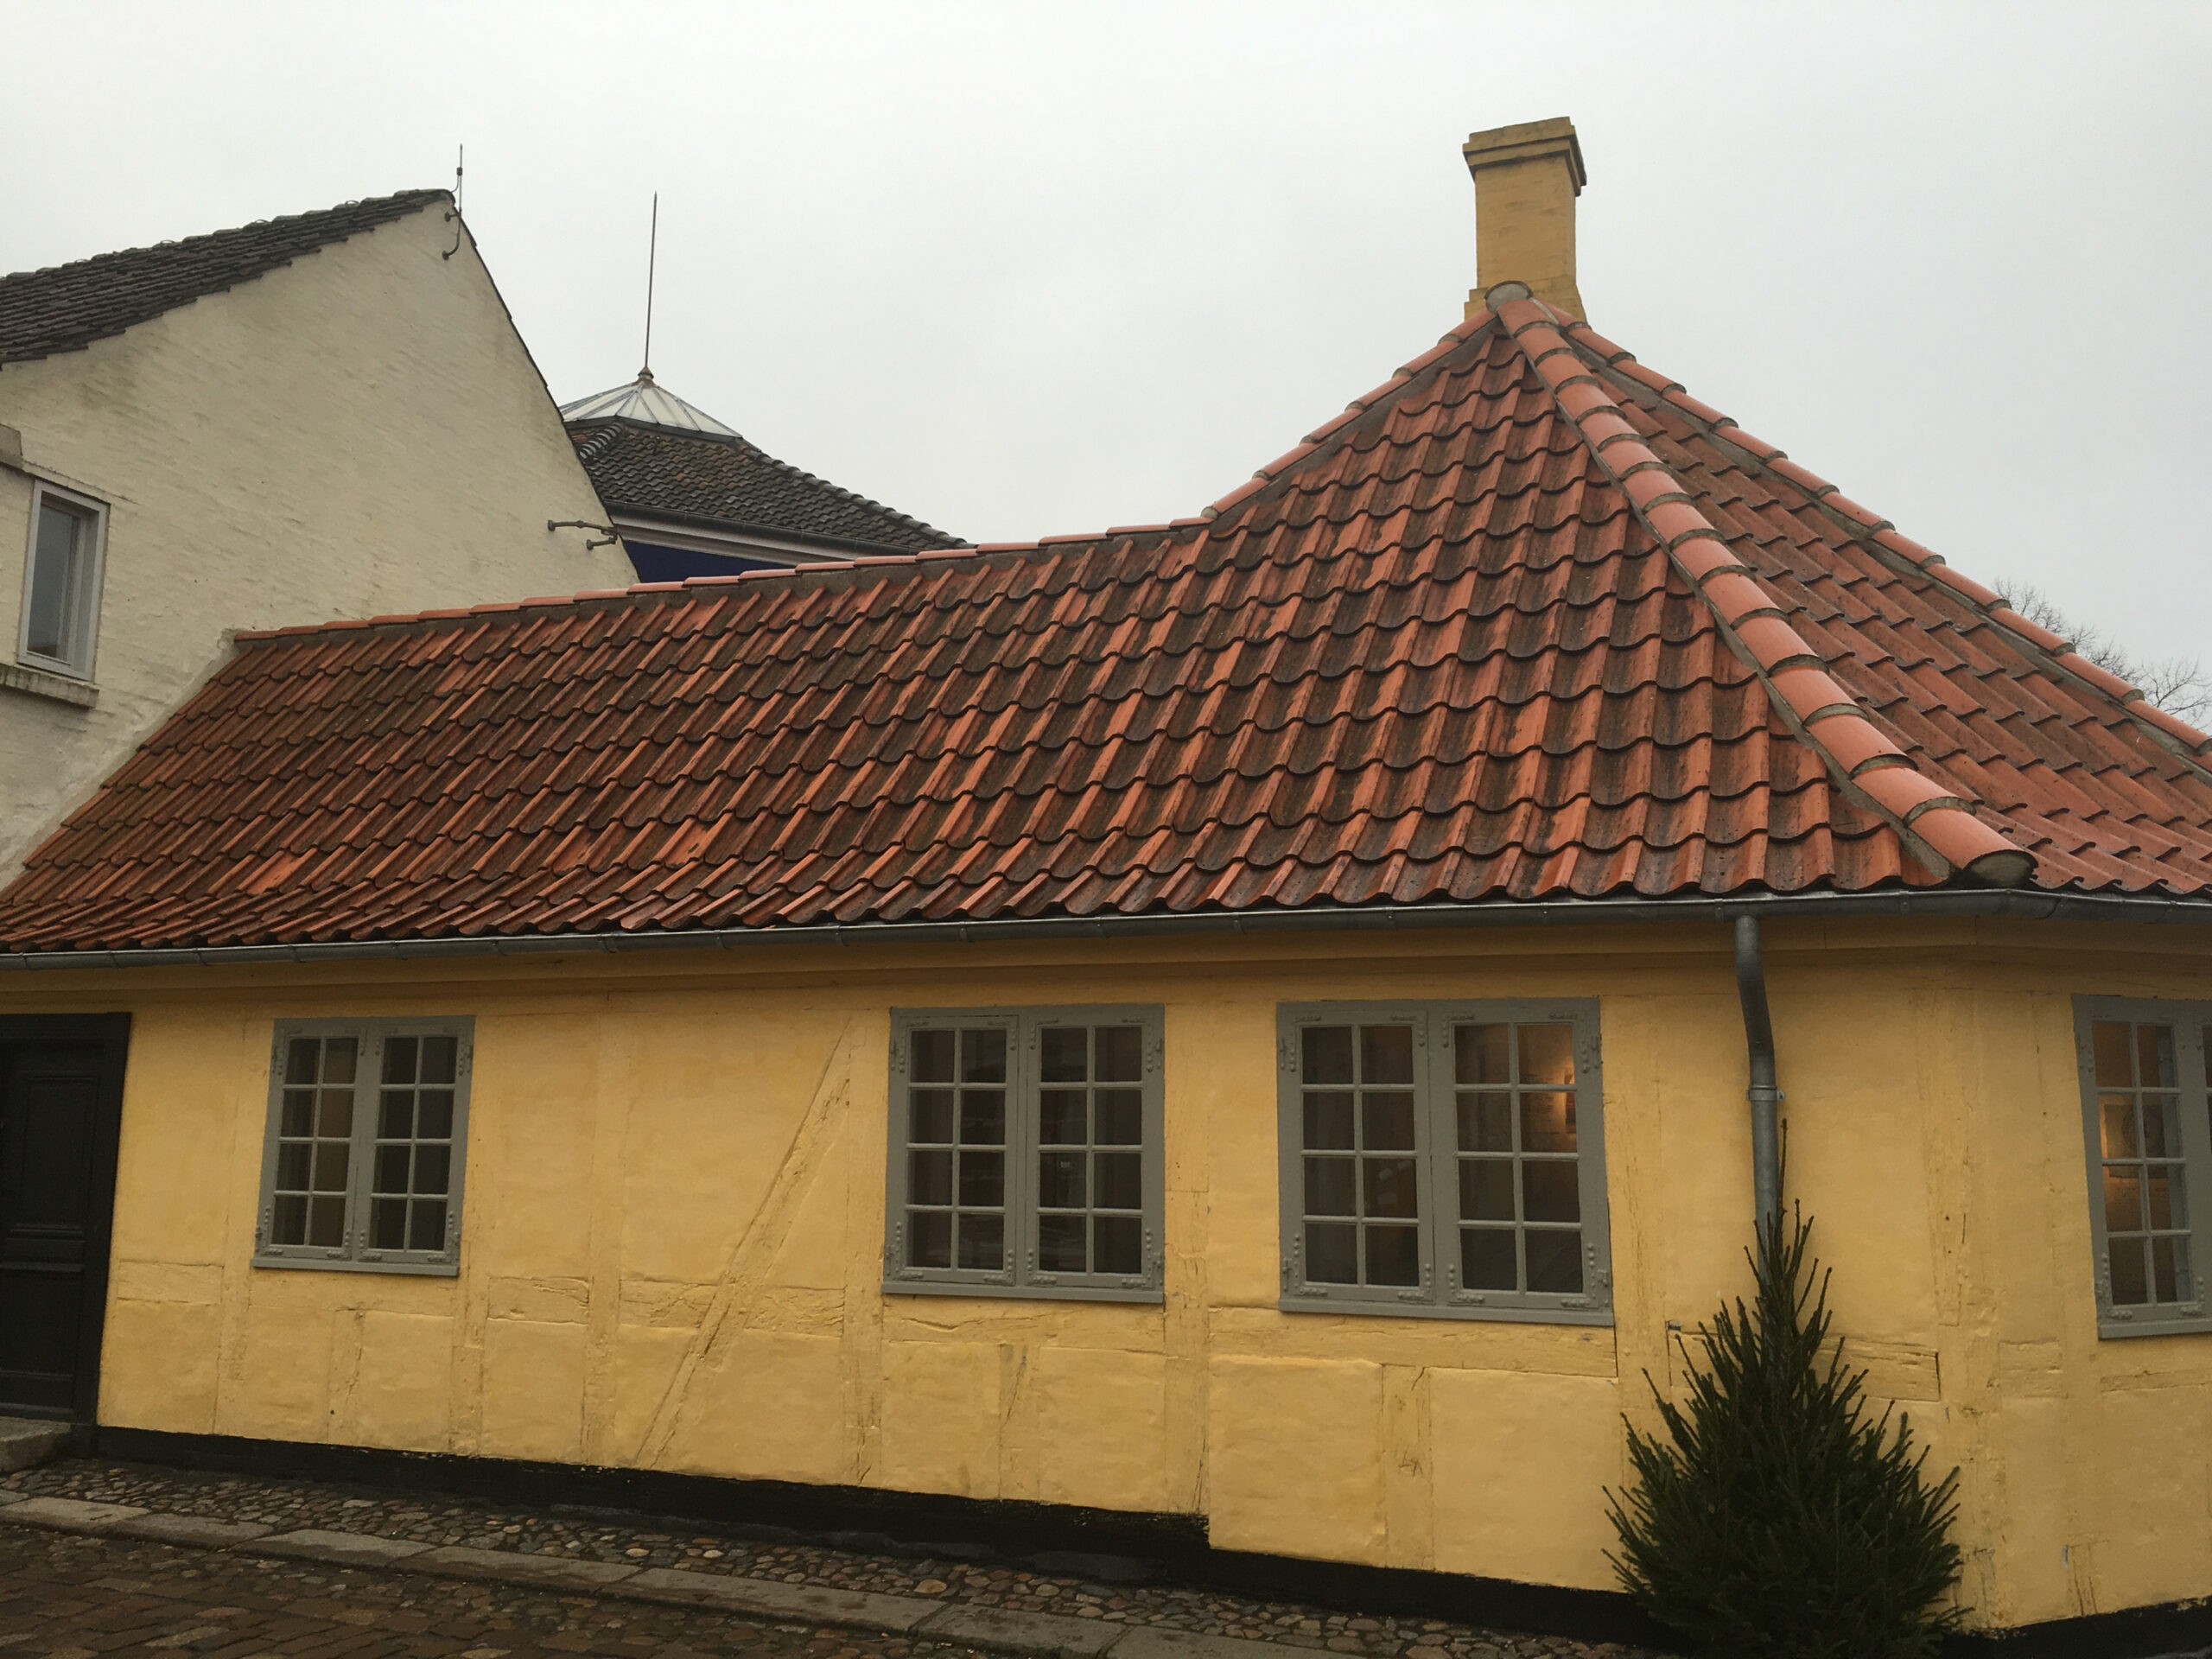 Hans Christian Anderson's house sits on Rådhuspladsen Street in Odense, Denmark.